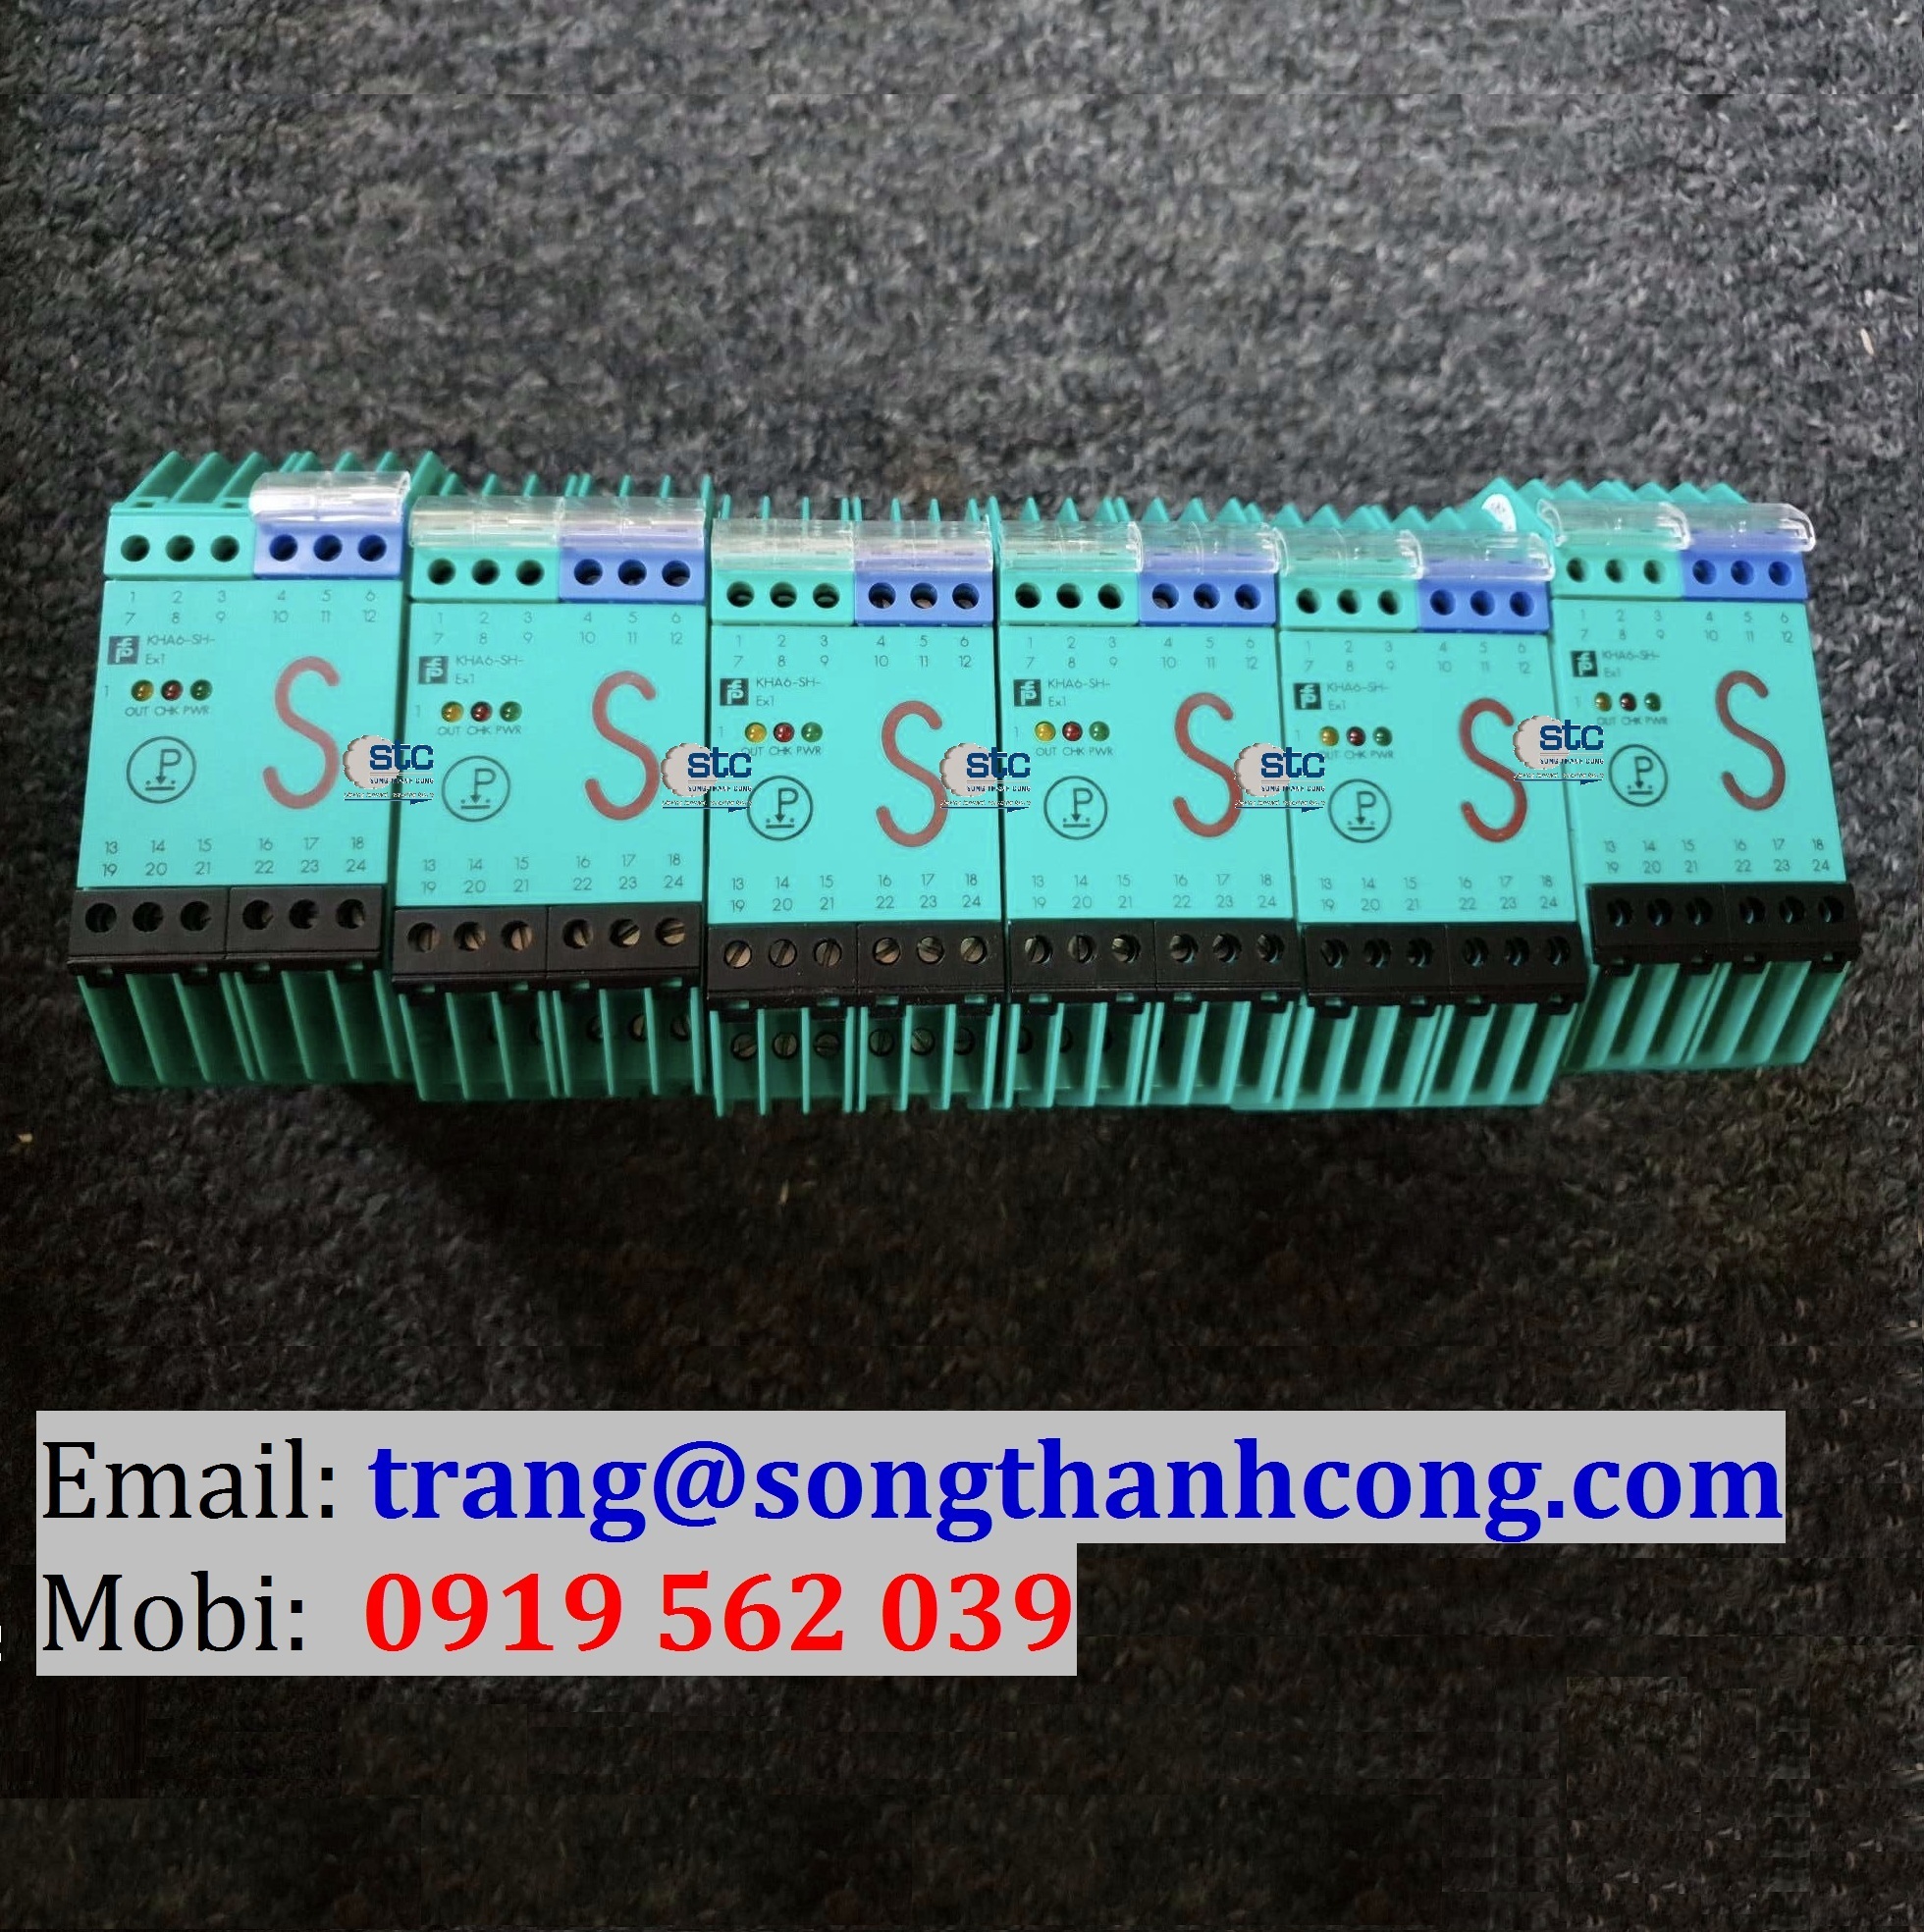 cong-tac-khuech-dai-tin-hieu-switch-amplifier-4.png